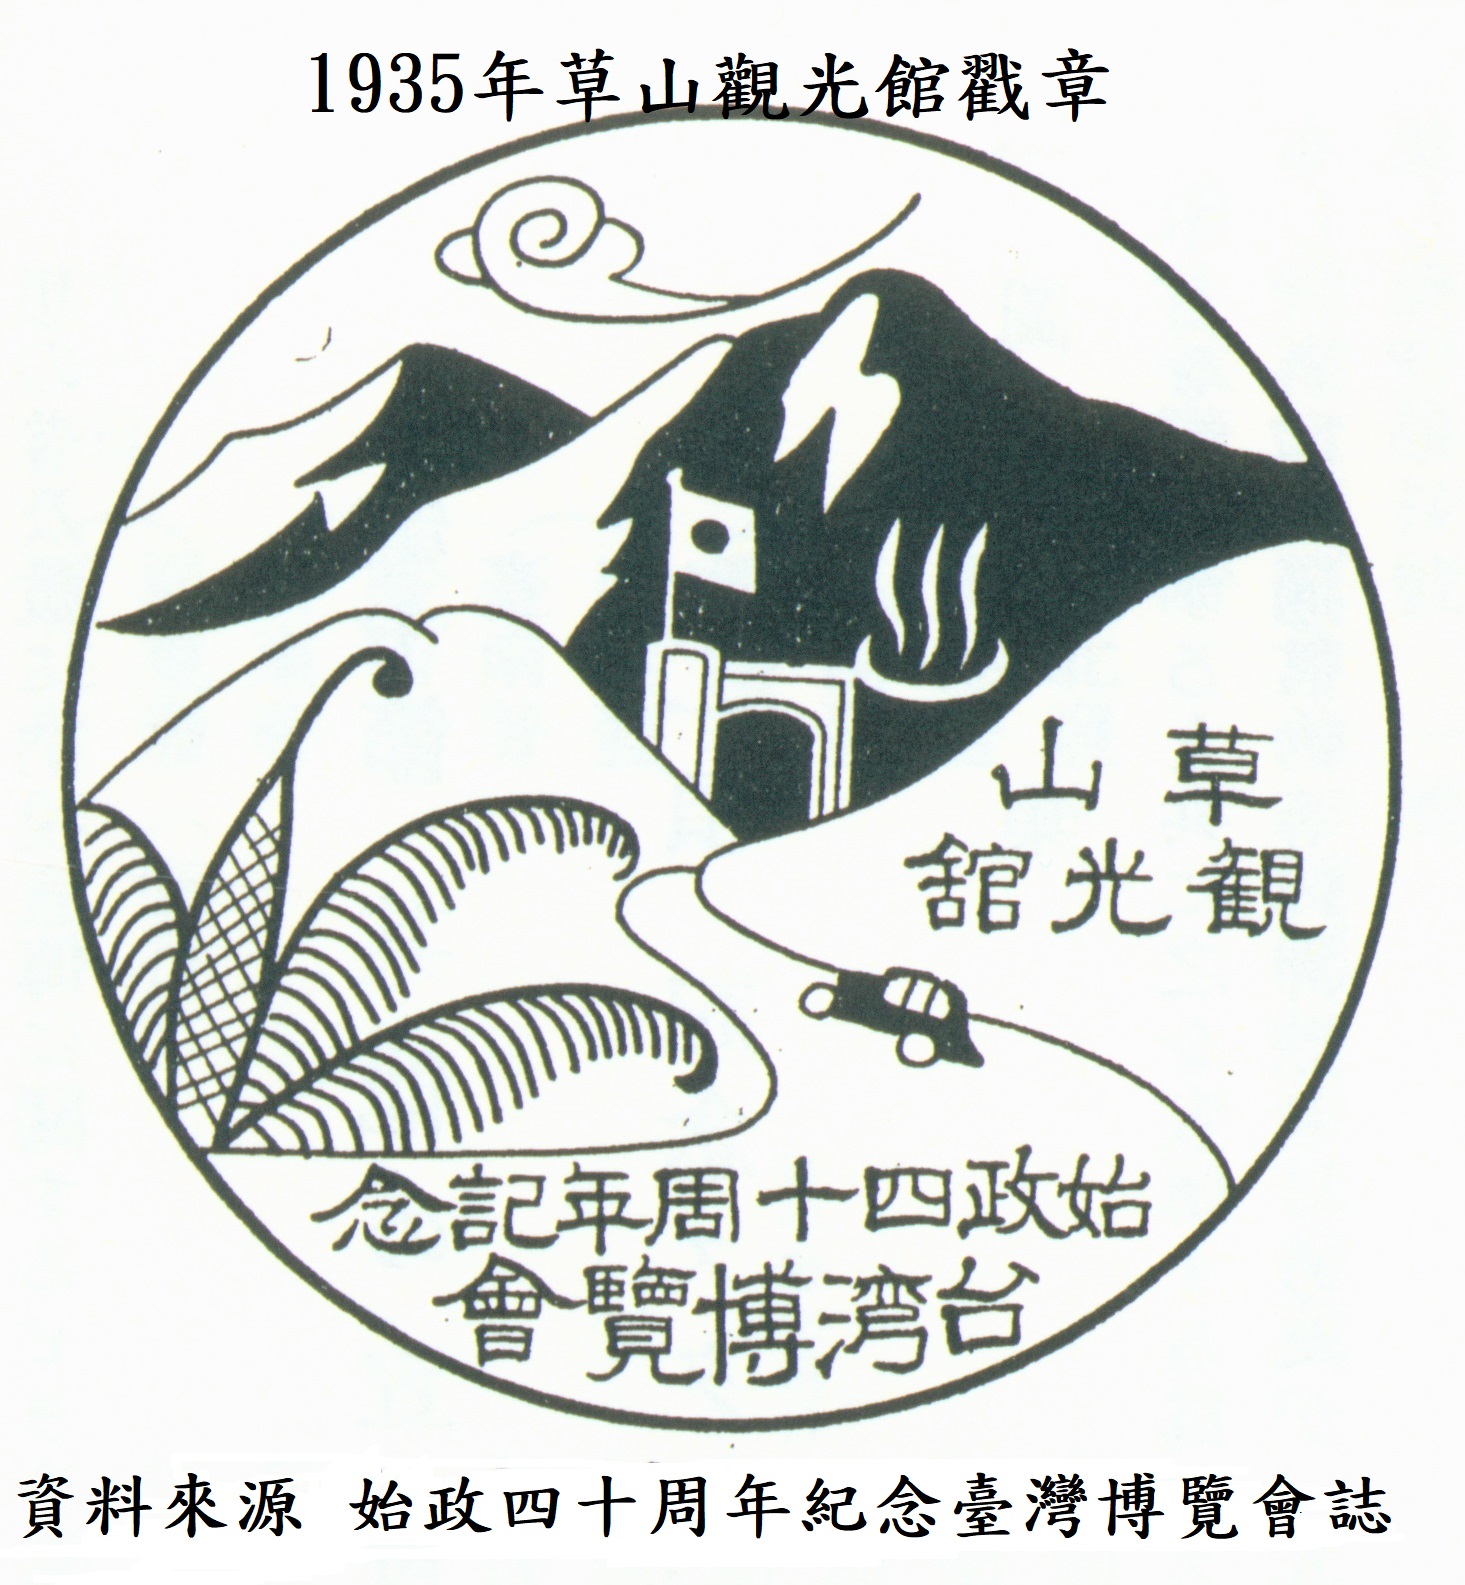 1935年草山觀光館戳章